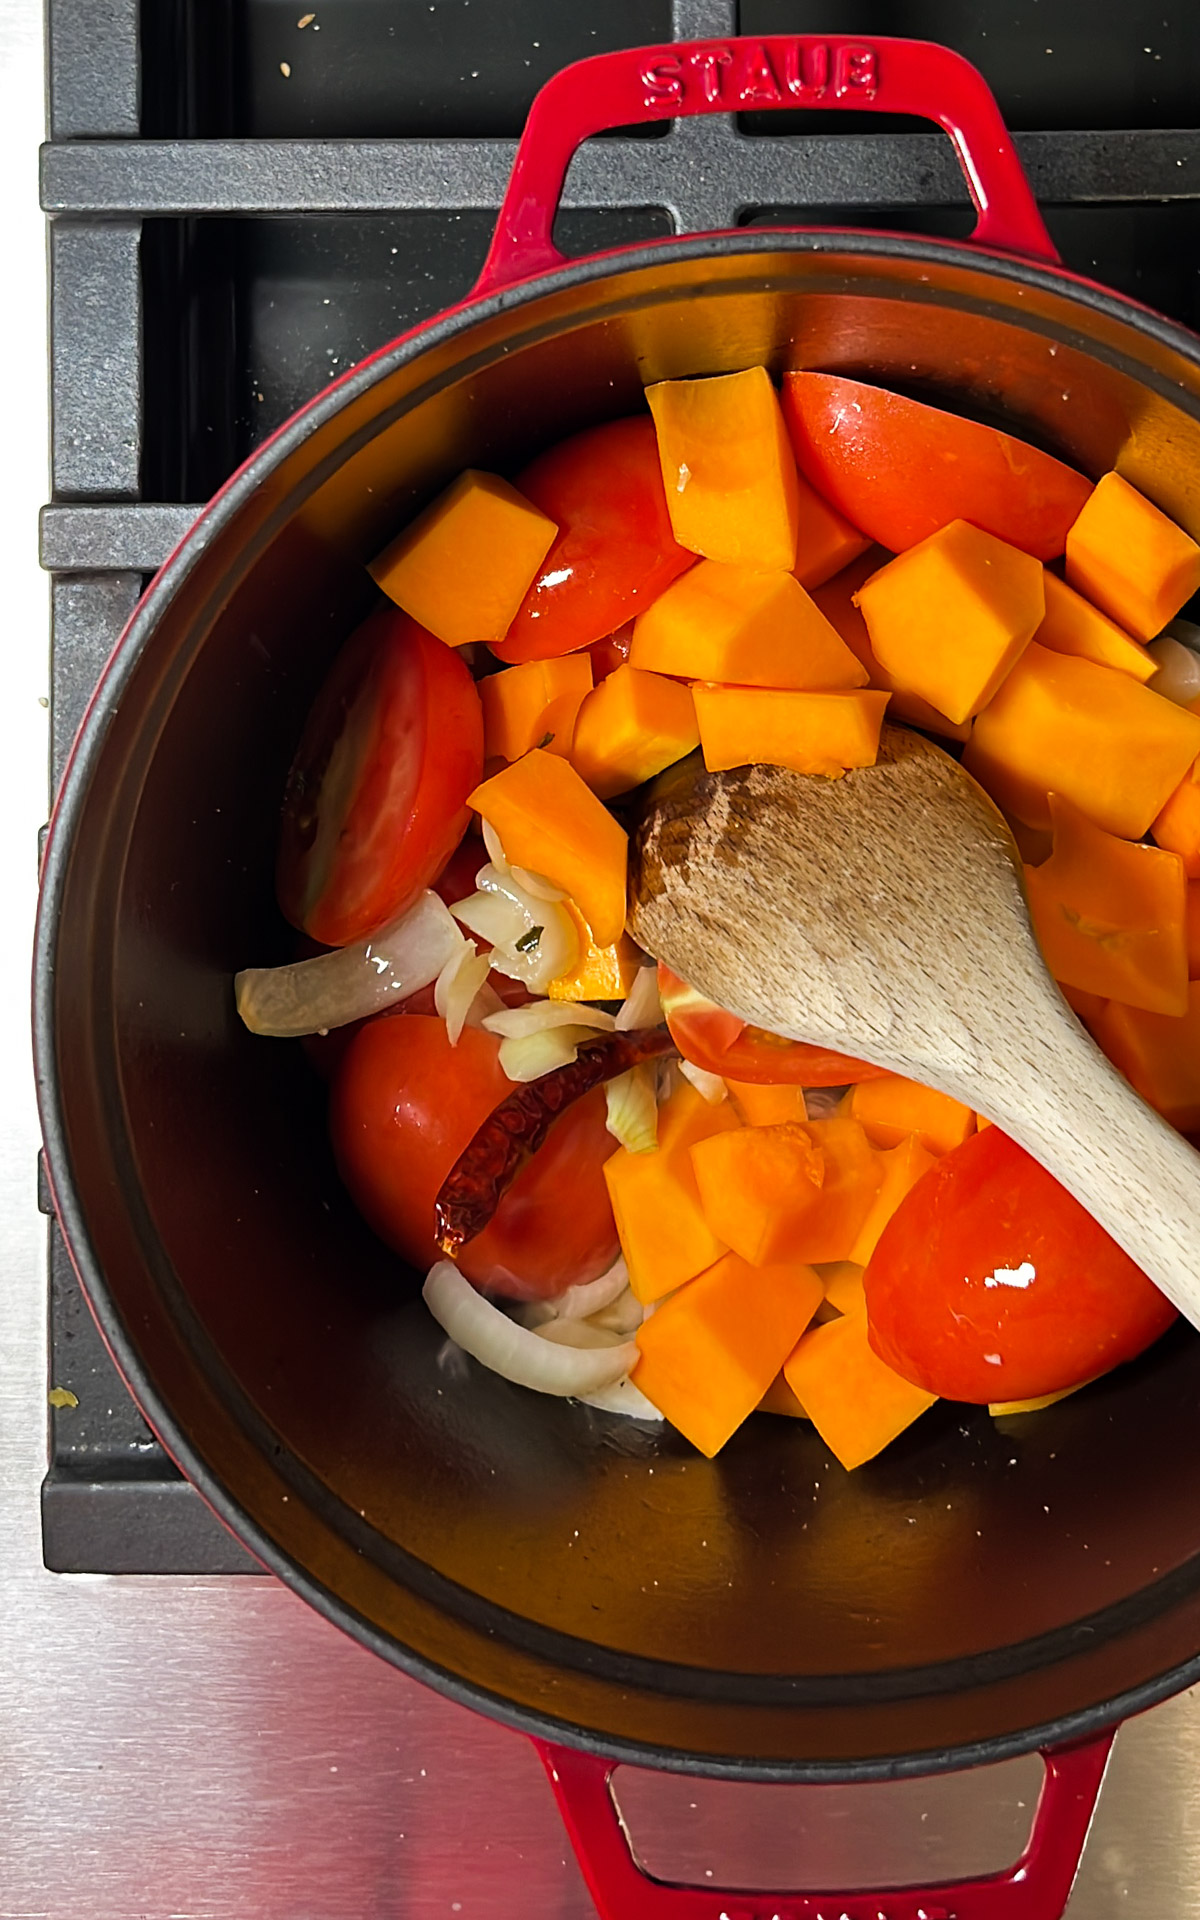 Una olla roja con verduras picadas para sopa de calabaza y una cuchara de madera sobre una estufa.